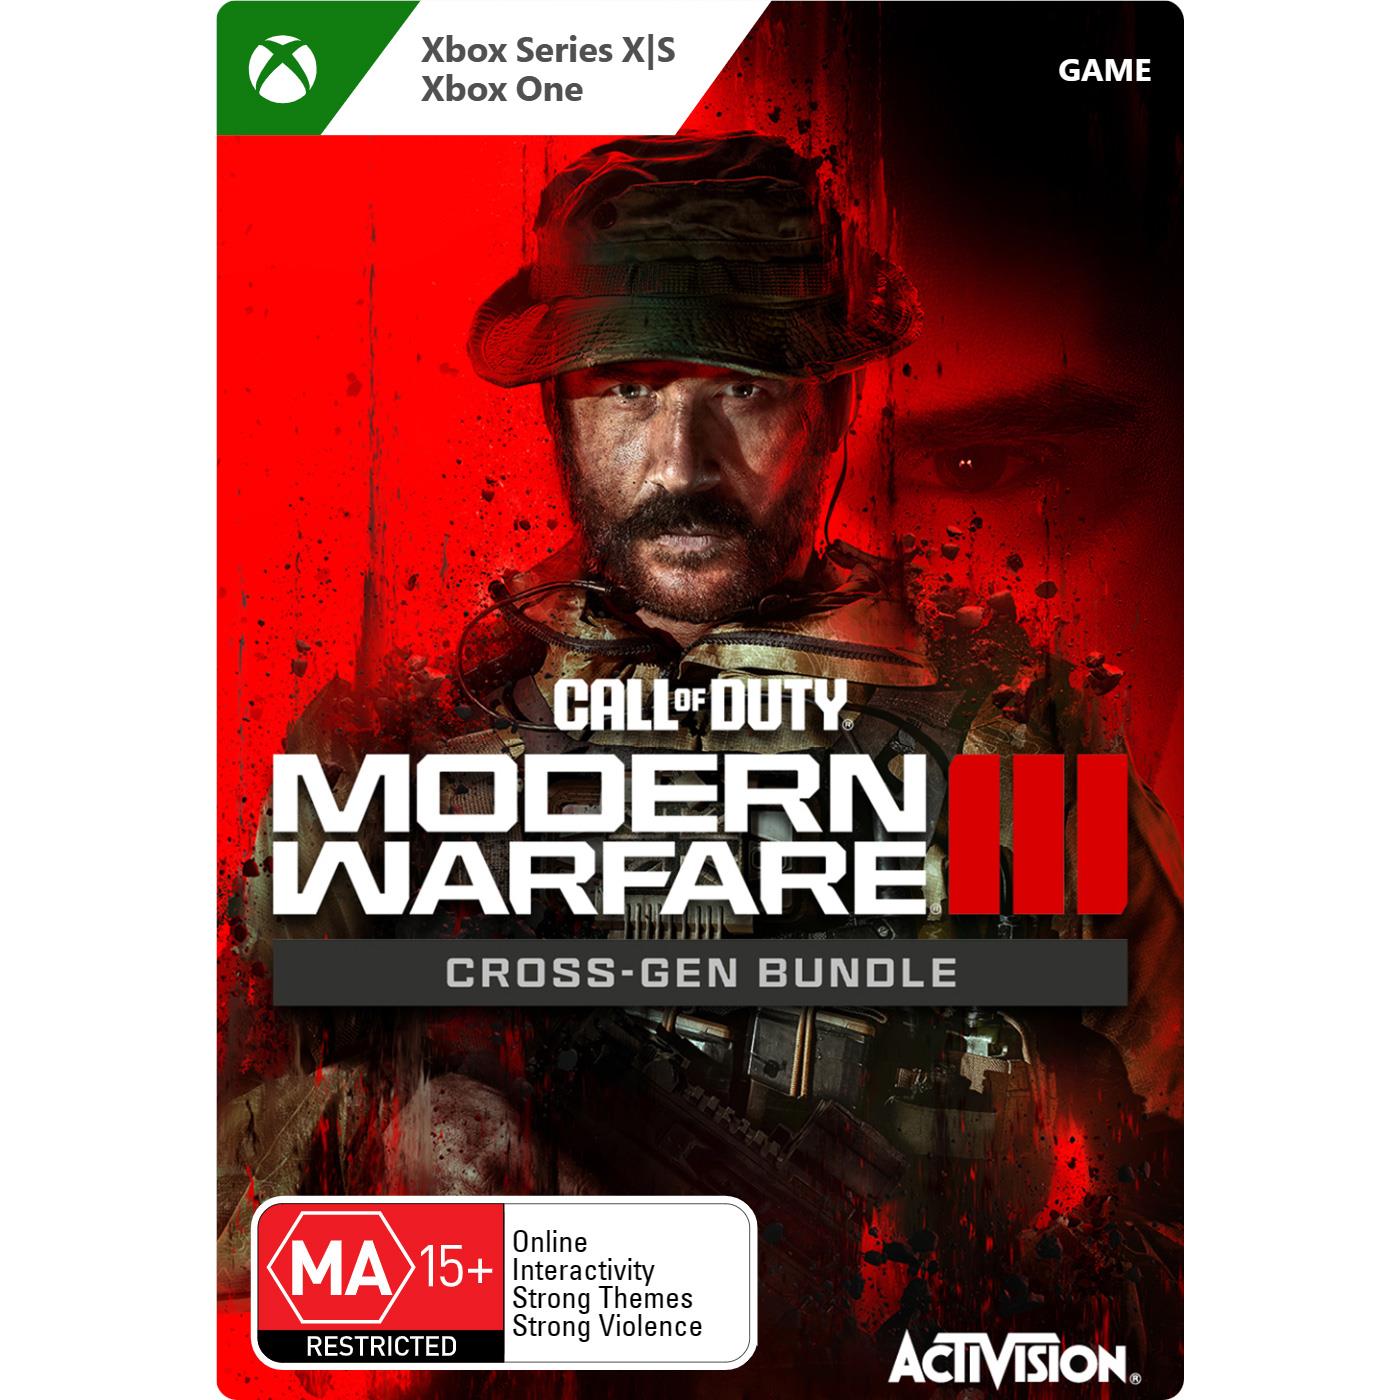 call of duty: modern warfare iii (cross gen bundle) (digital download)